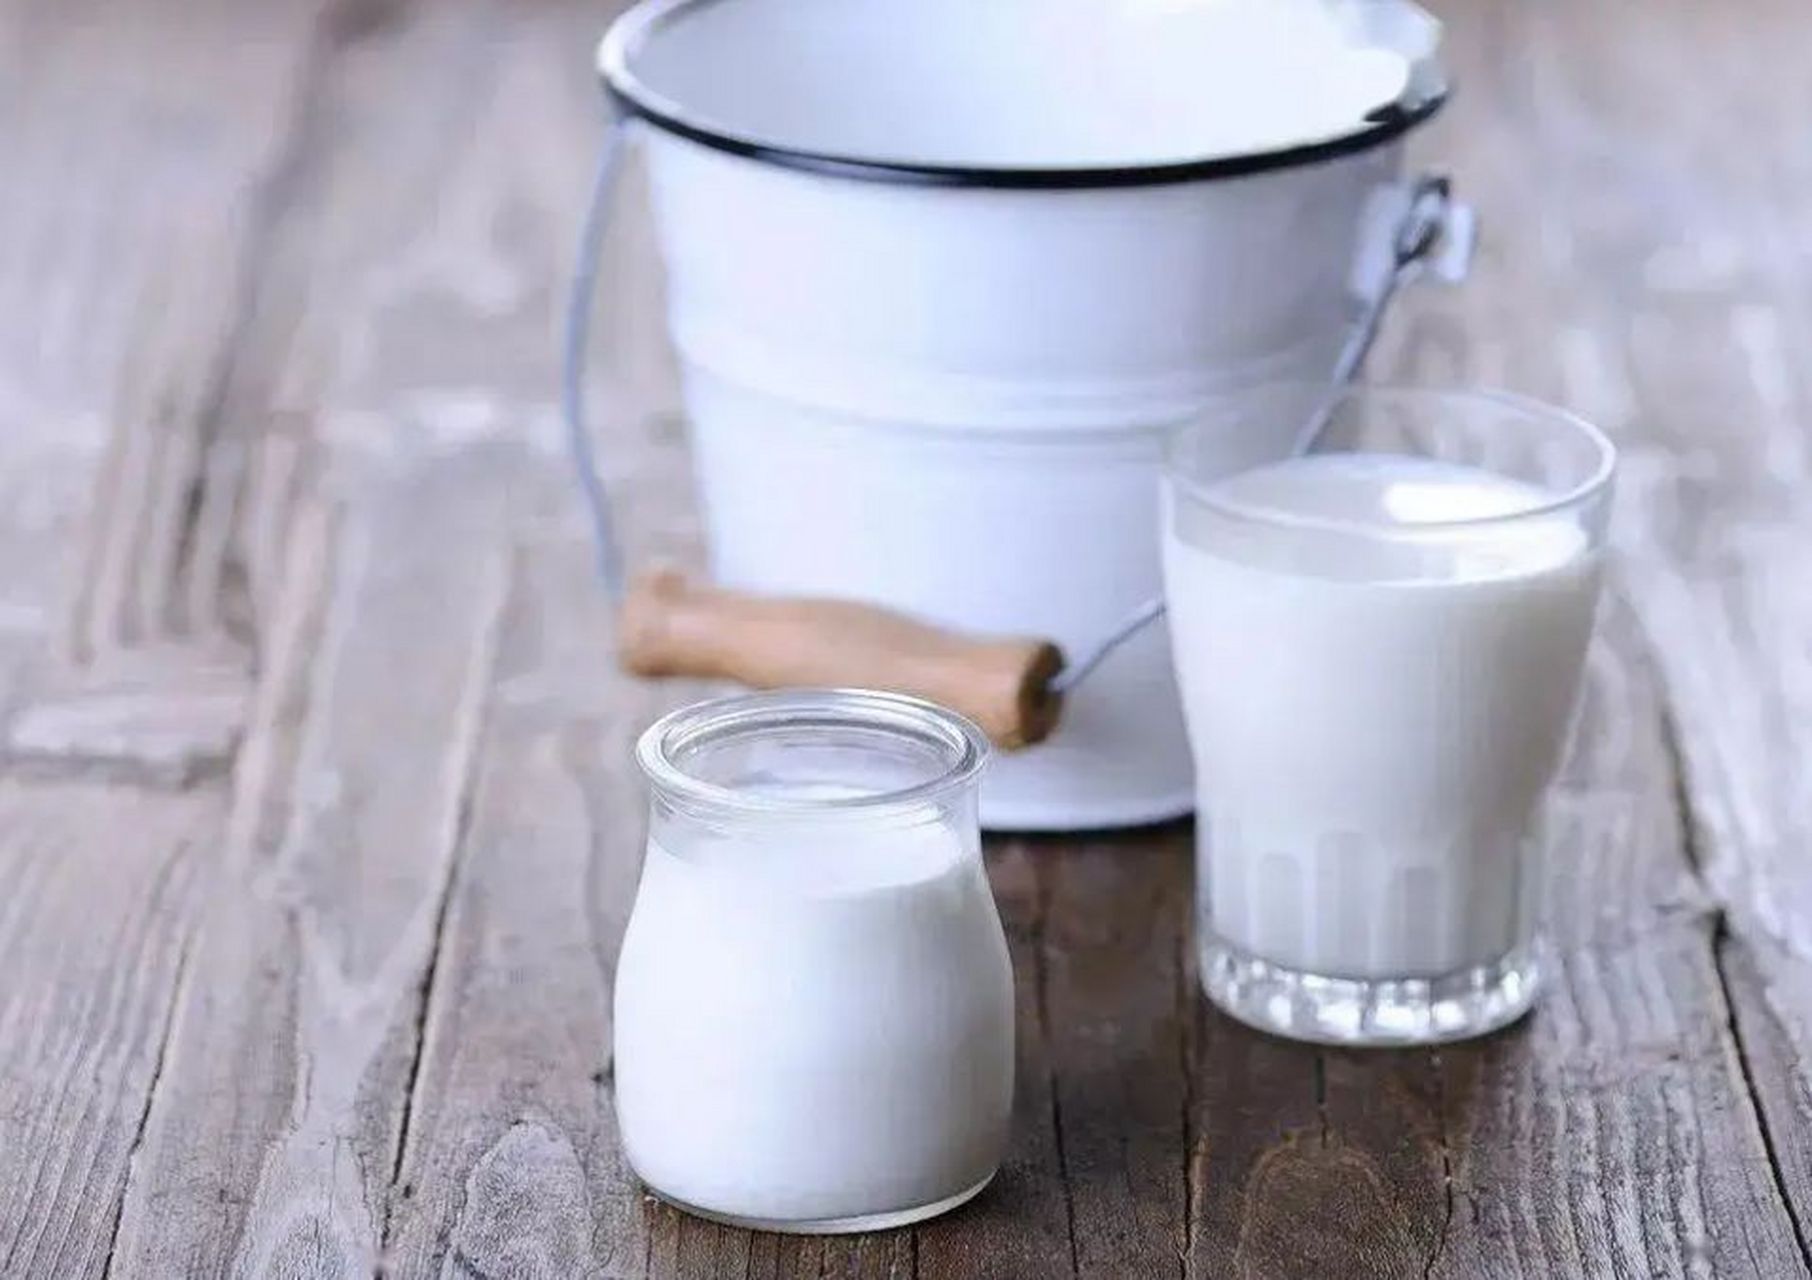 答案可能出乎意料 减肥喝牛奶还是酸奶 牛奶,酸奶都能对减肥提供优质